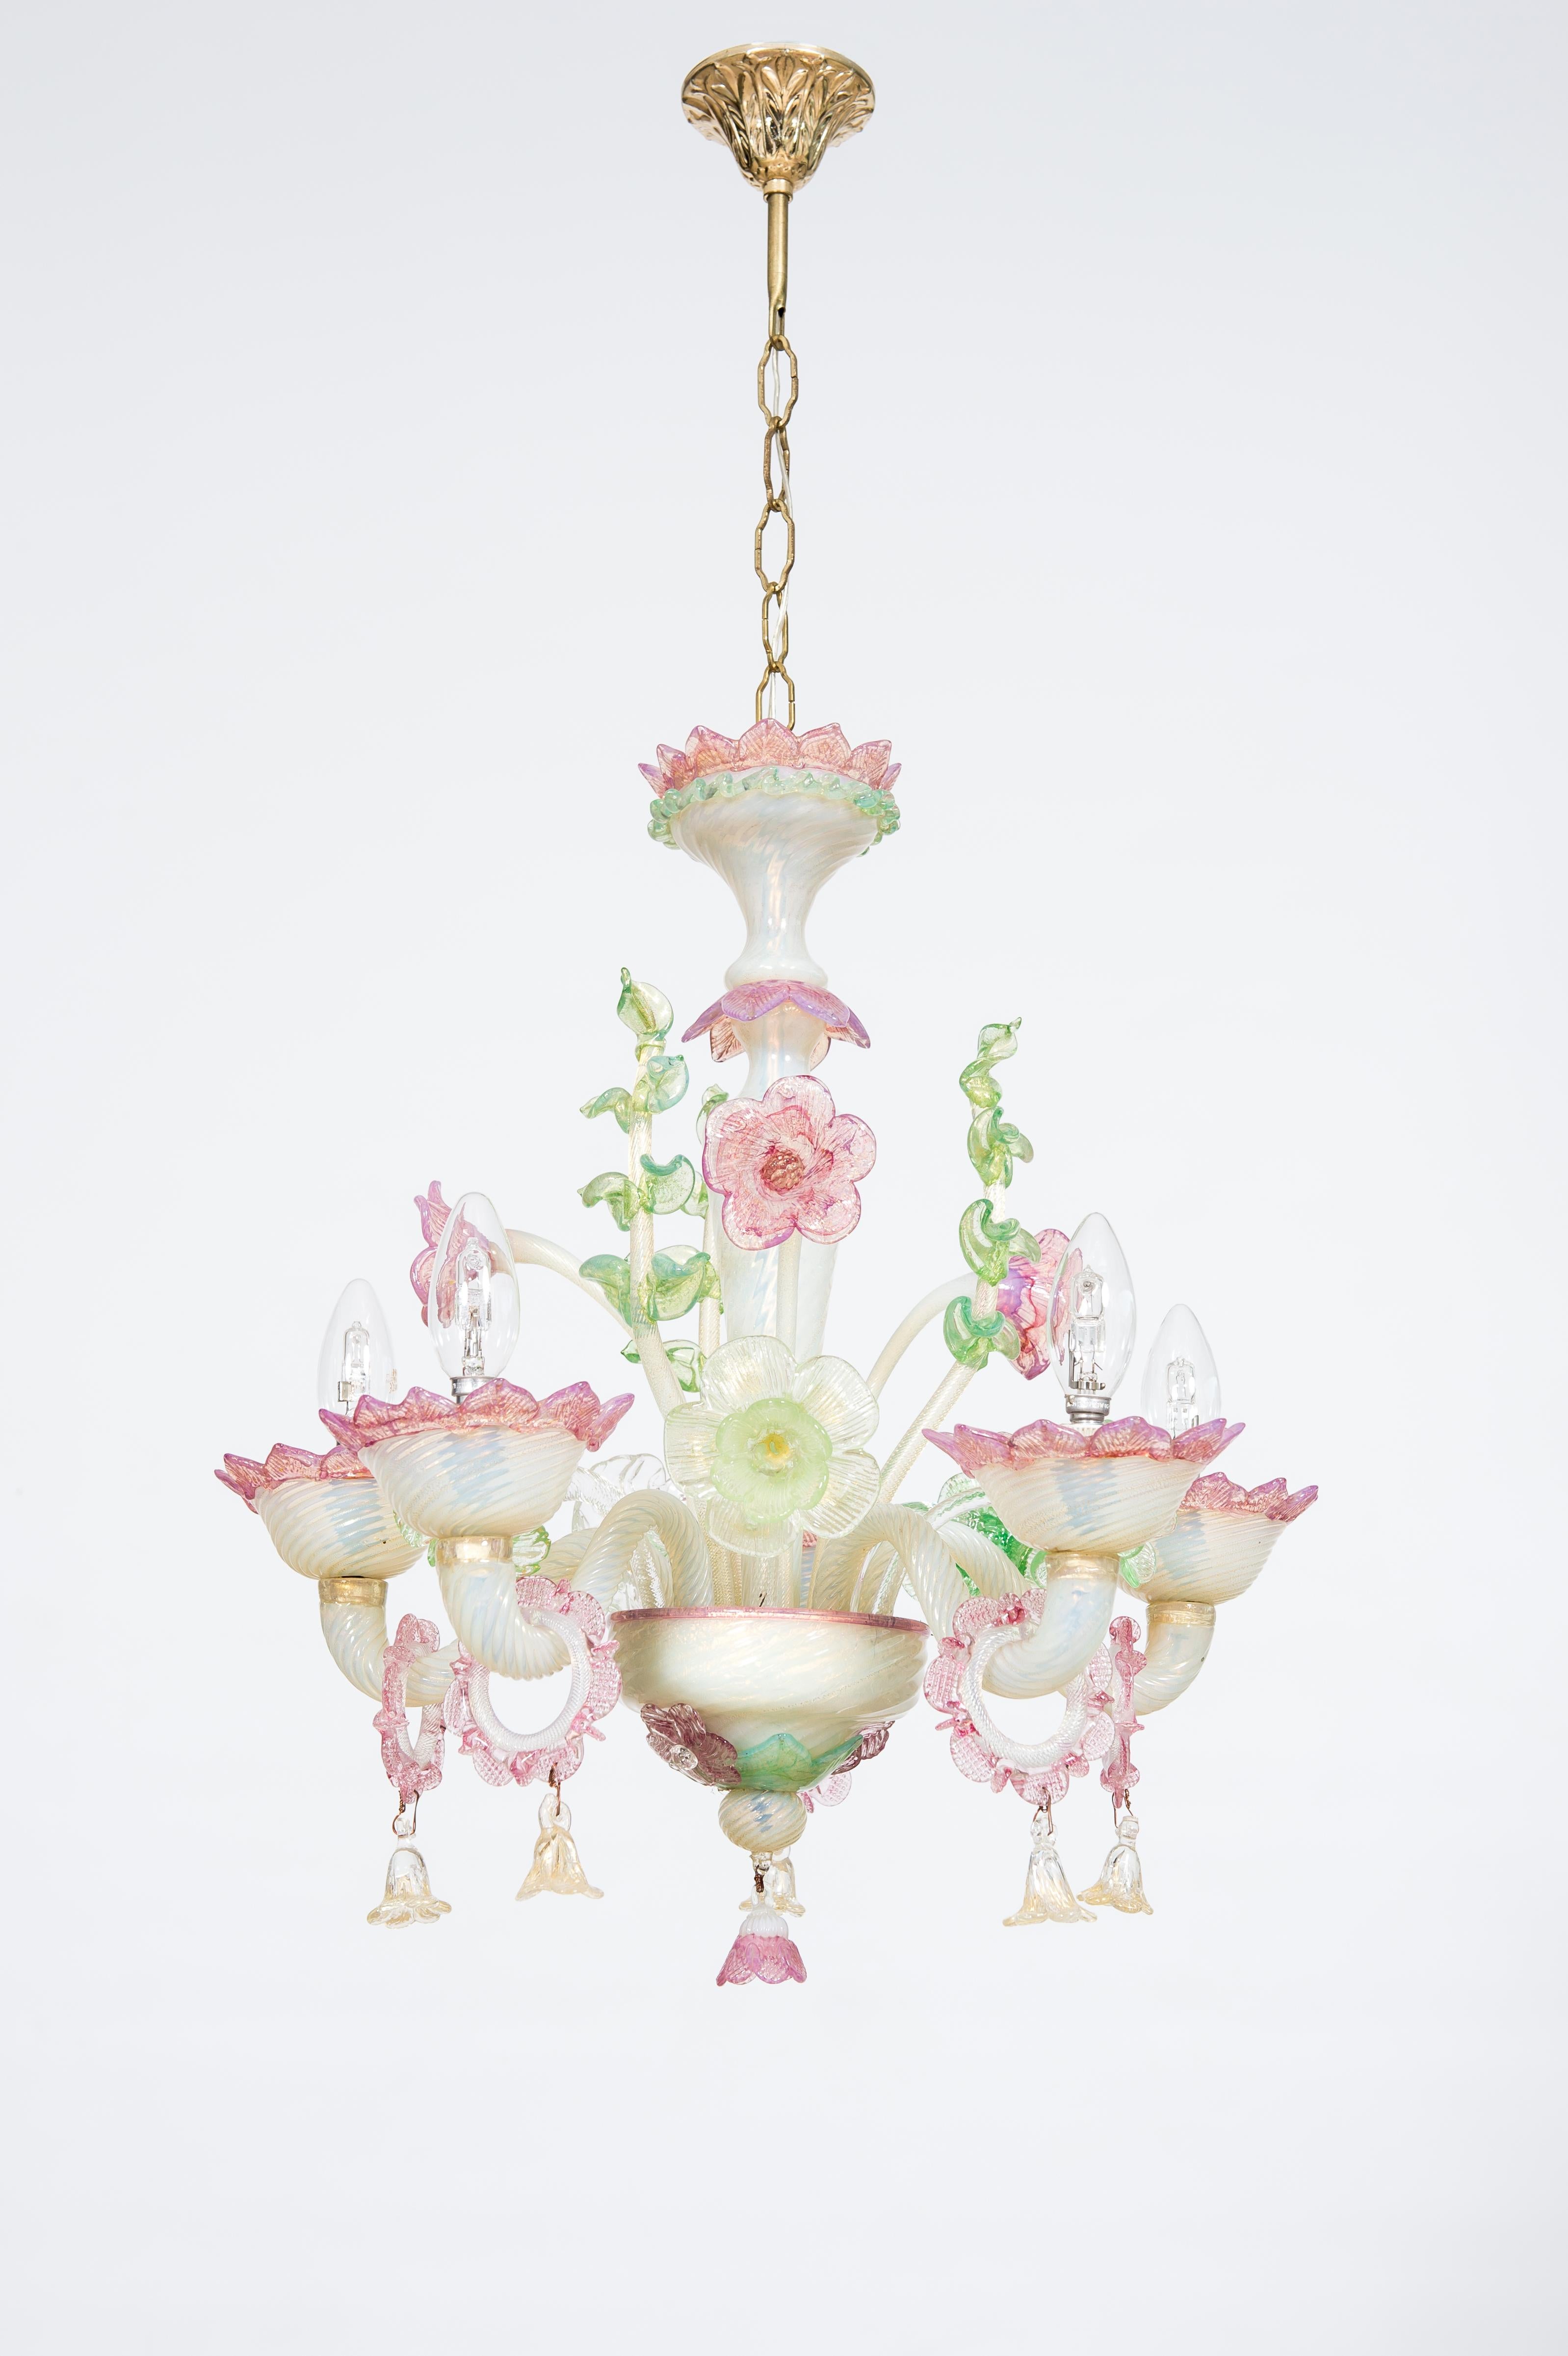 Lustre en verre de Murano à opaline florale et or, fabriqué à la main en Italie dans les années 1900.
Ce lustre en opaline fine, fabriqué à la main sur l'île de Murano (région de Venise, Italie) dans les années 1900, se distingue par ses décorations